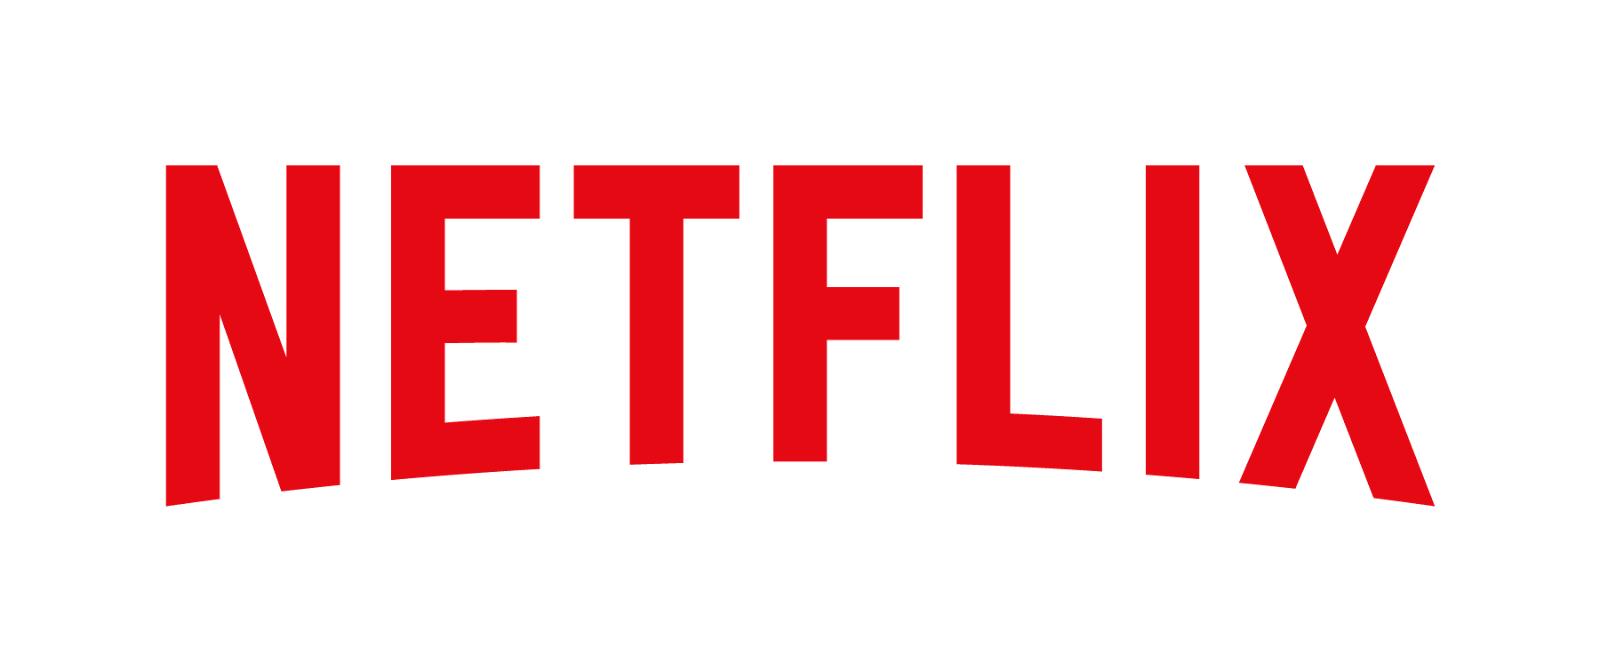 Netflix (Net)